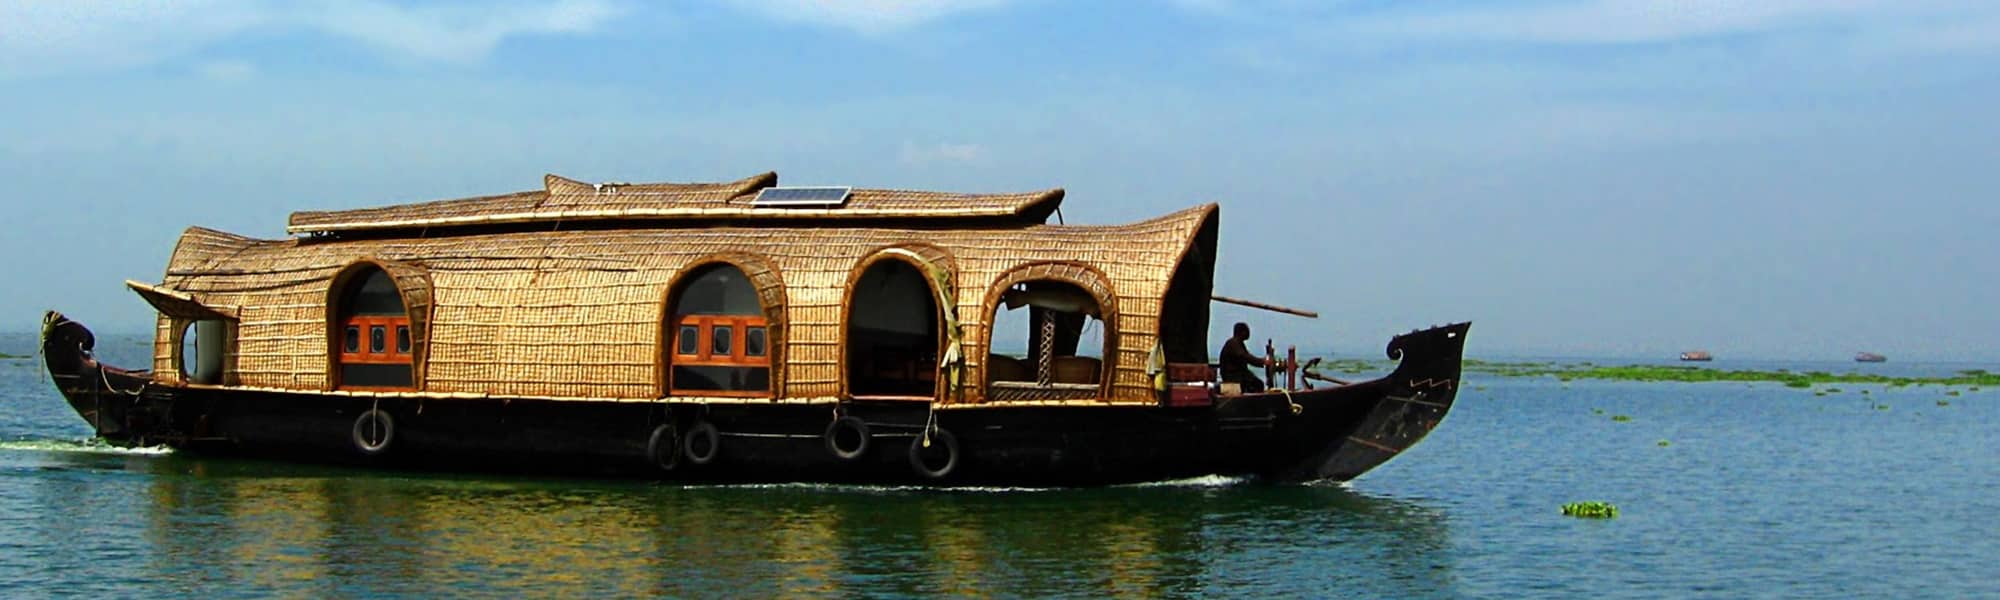 Kerala Houseboat Cruise 